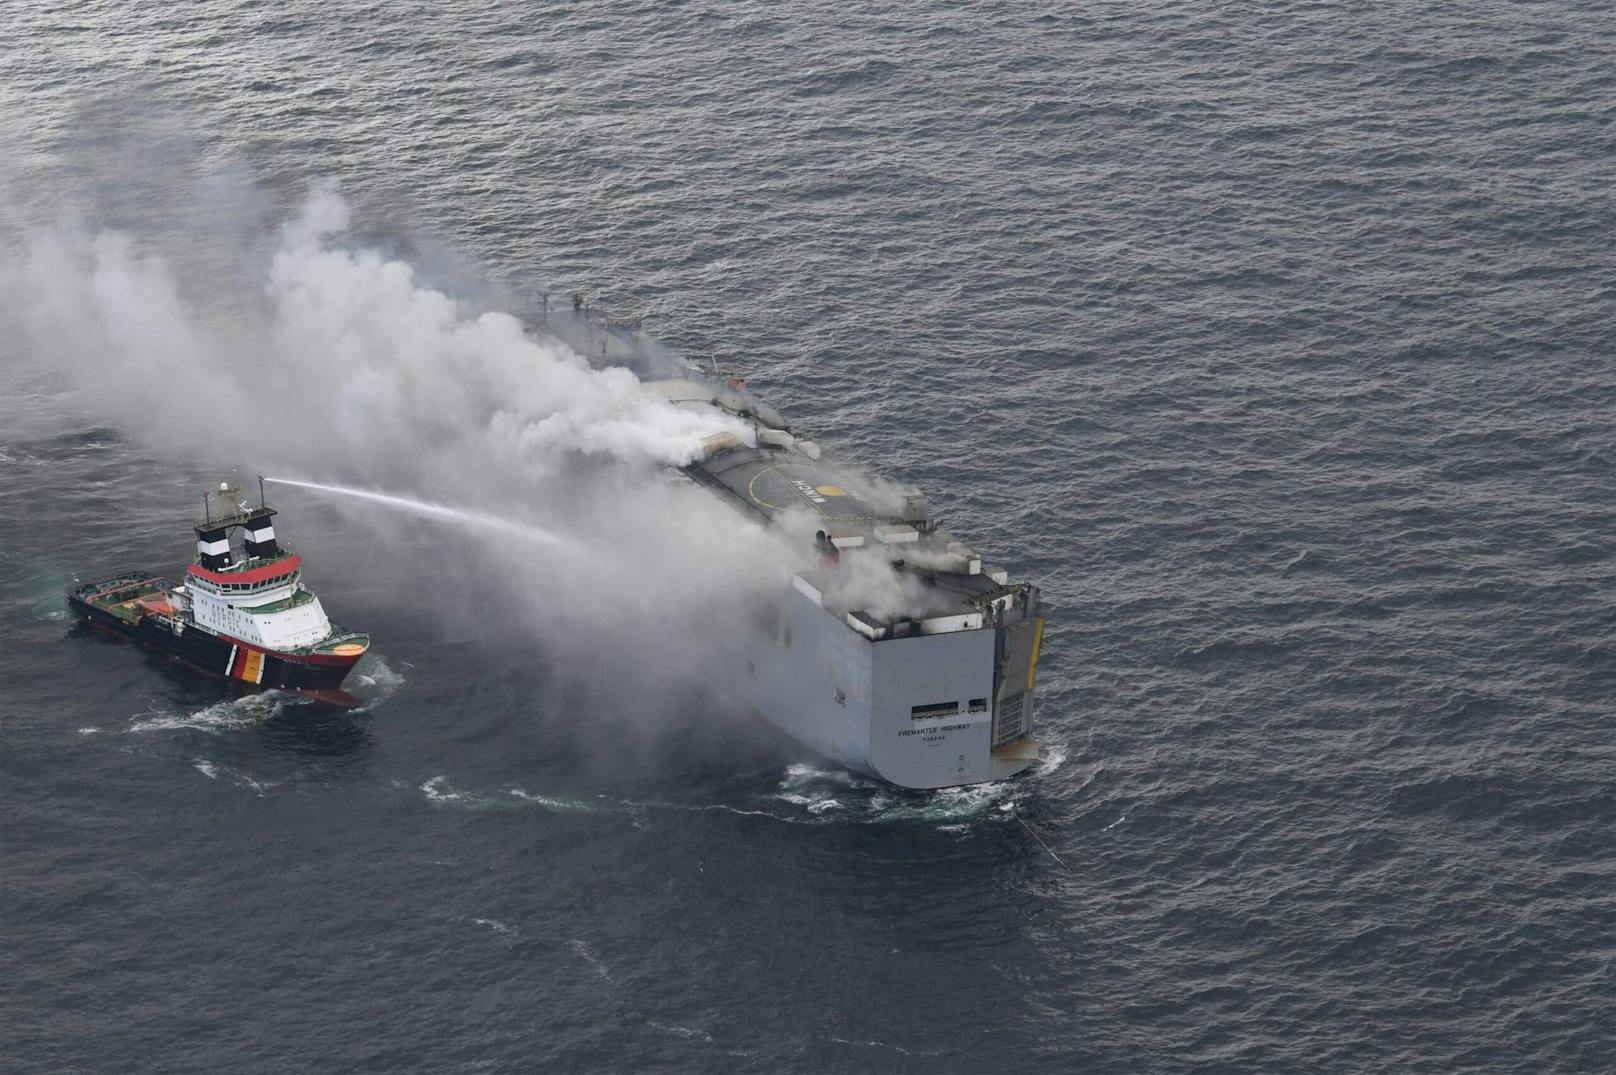 Nach Angaben der Küstenwache ist es gefährlich, das Feuer direkt zu löschen, da das Löschwasser das Schiff zum Kentern bringen könnte.